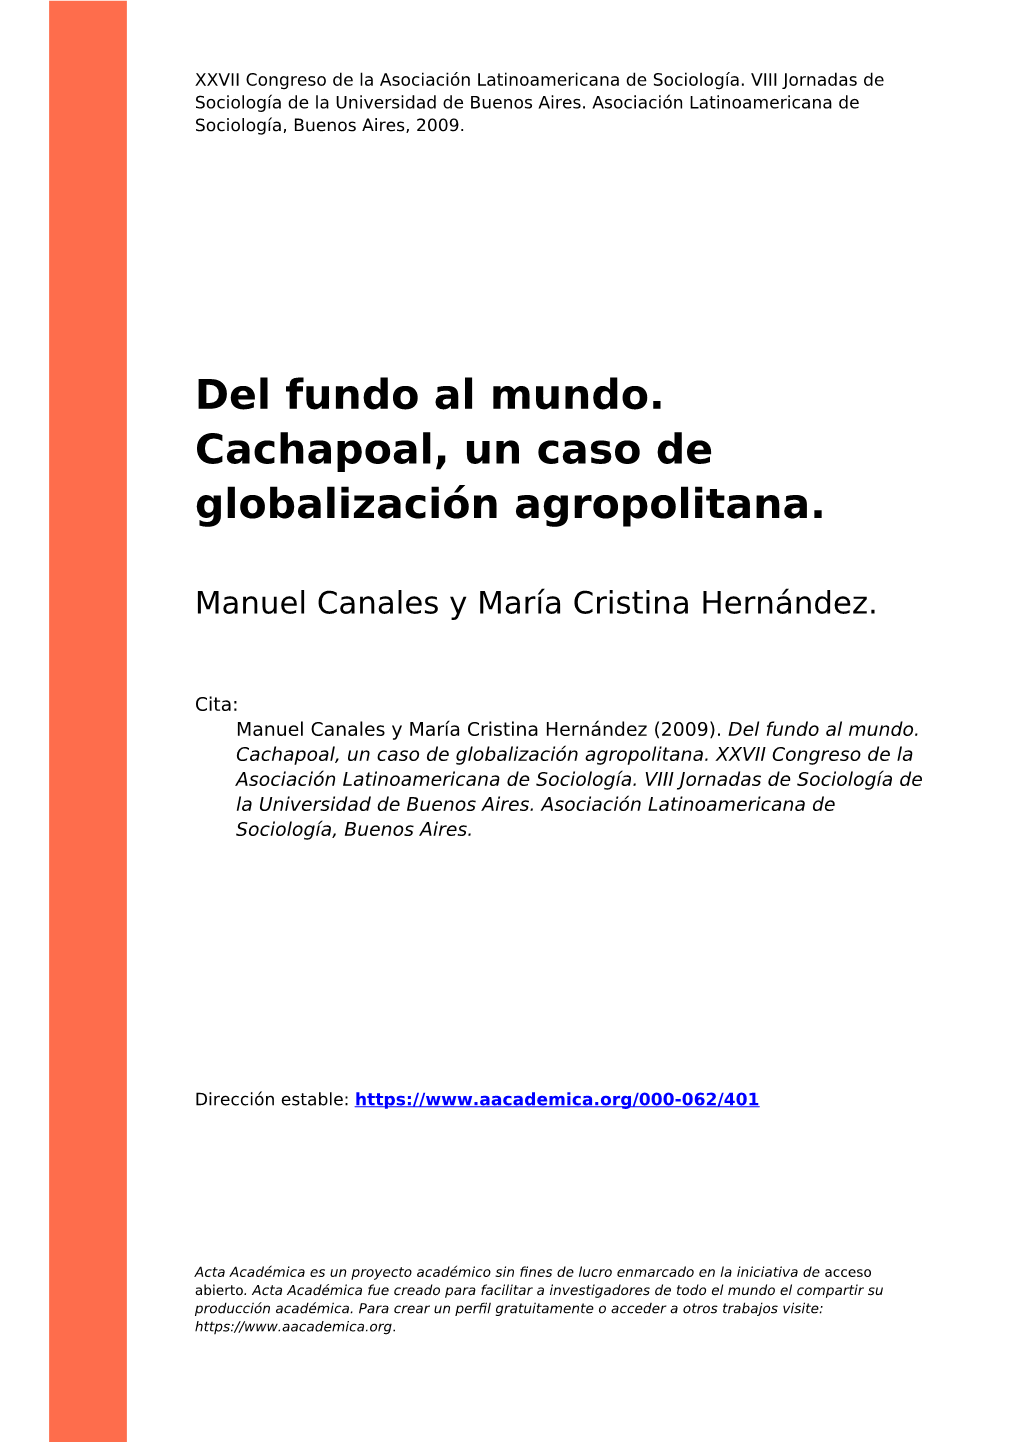 Del Fundo Al Mundo. Cachapoal, Un Caso De Globalización Agropolitana